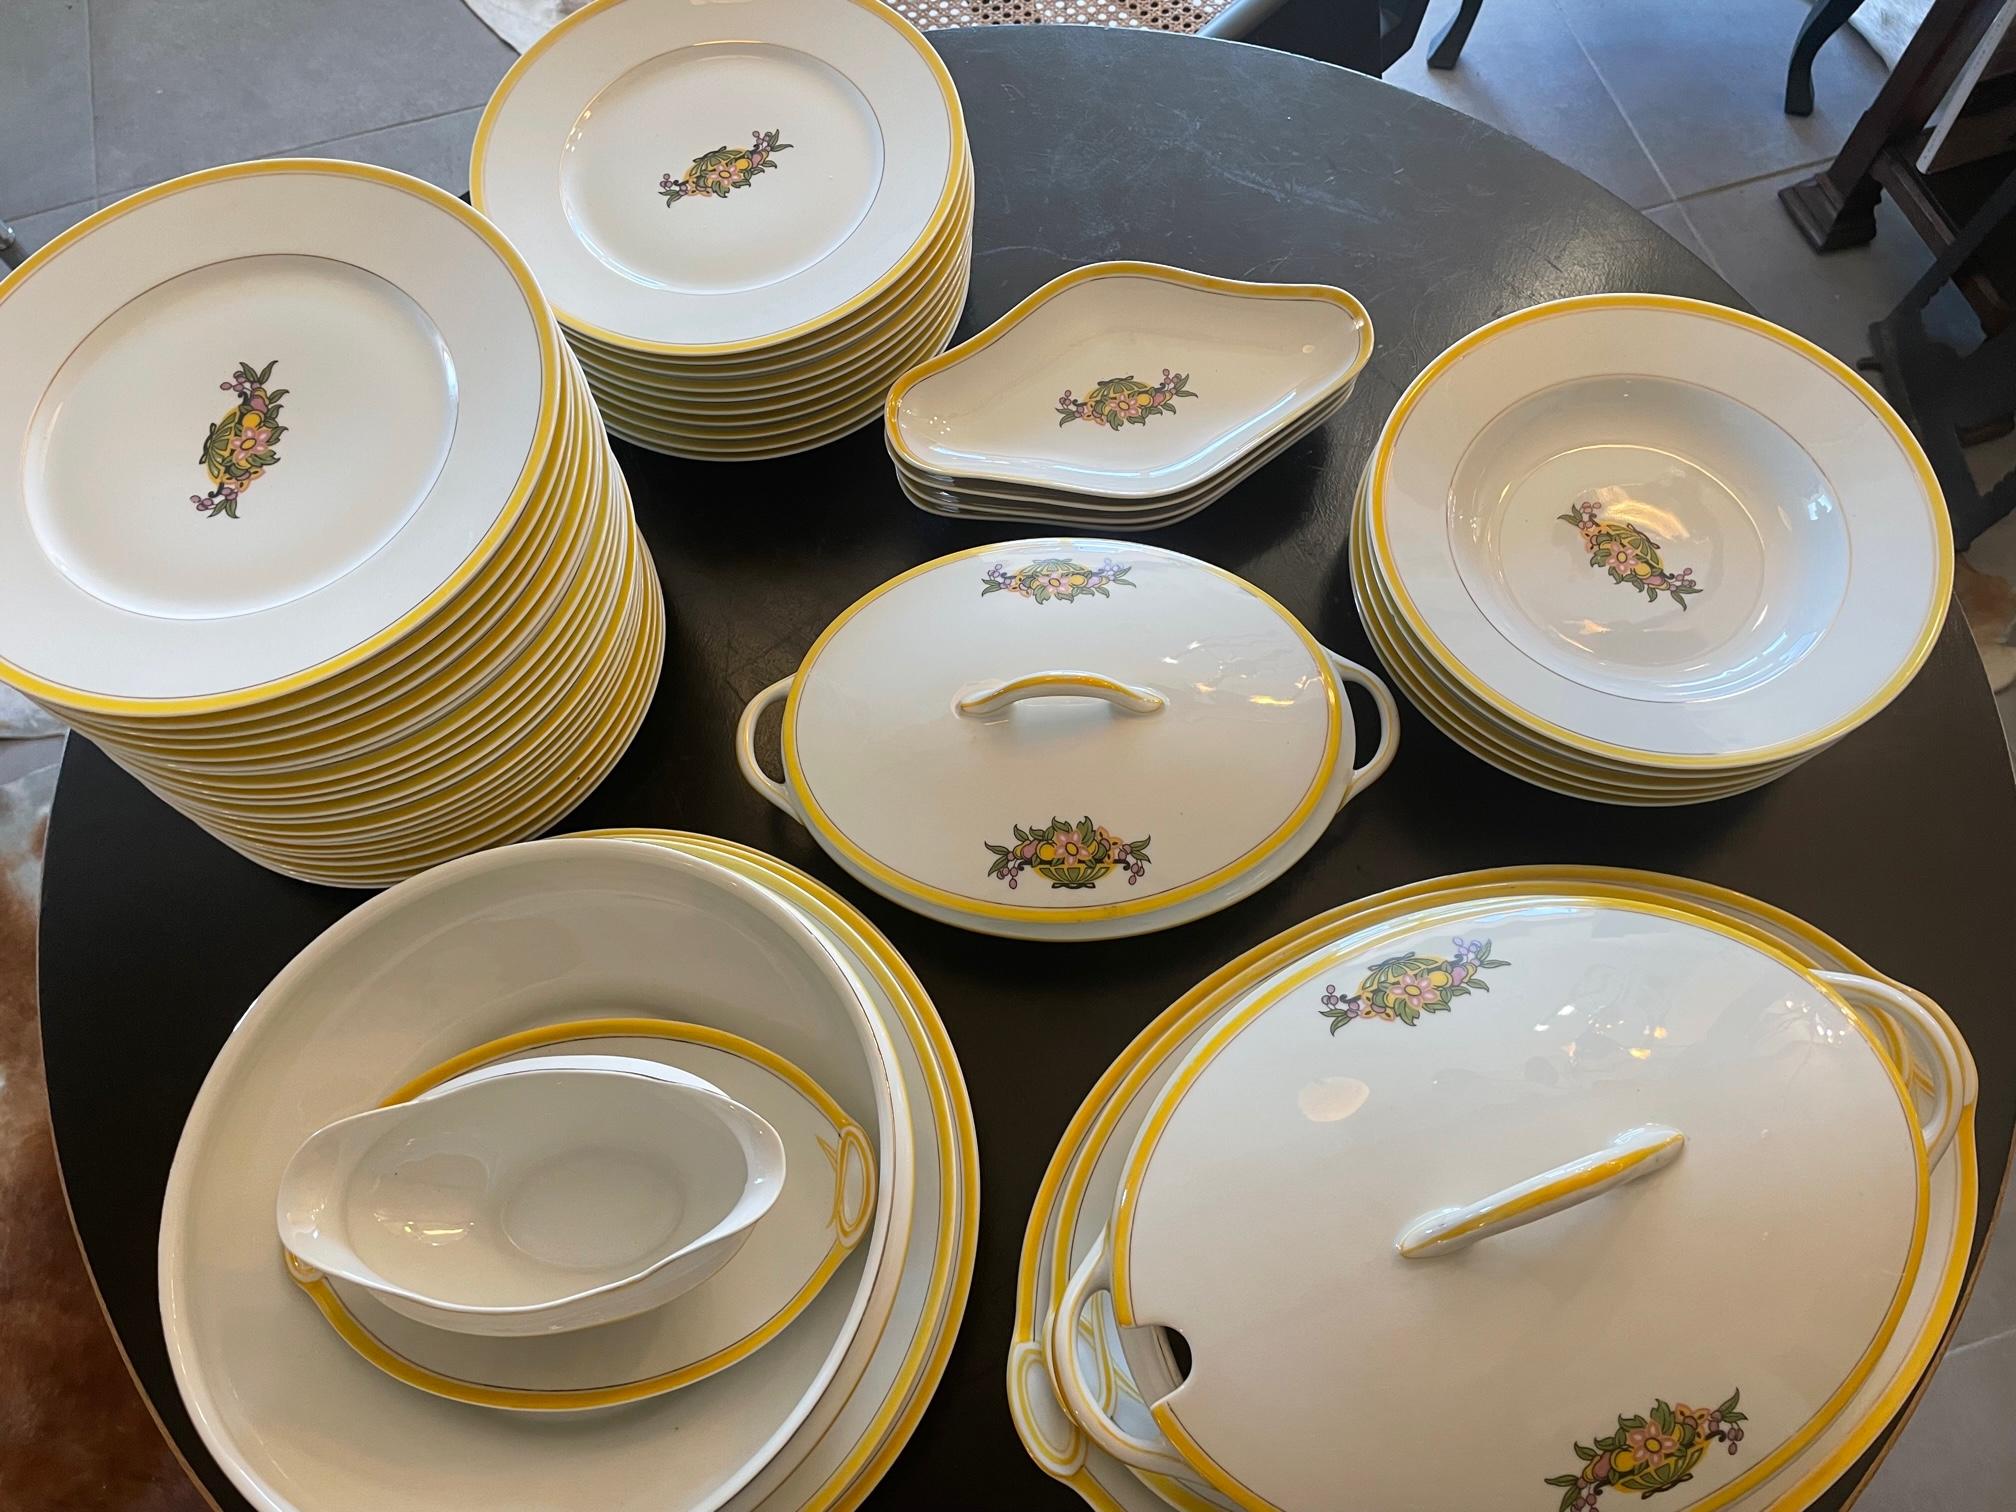 Magnifique service de table Art déco en porcelaine de Limoges avec une bordure jaune et une décoration florale au centre. 
49 pièces : 
- 31 assiettes à dîner de 25 cm
- 4 assiettes creuses 25 cm 
- 2 soupières à couvercle W35cmXD22cm /